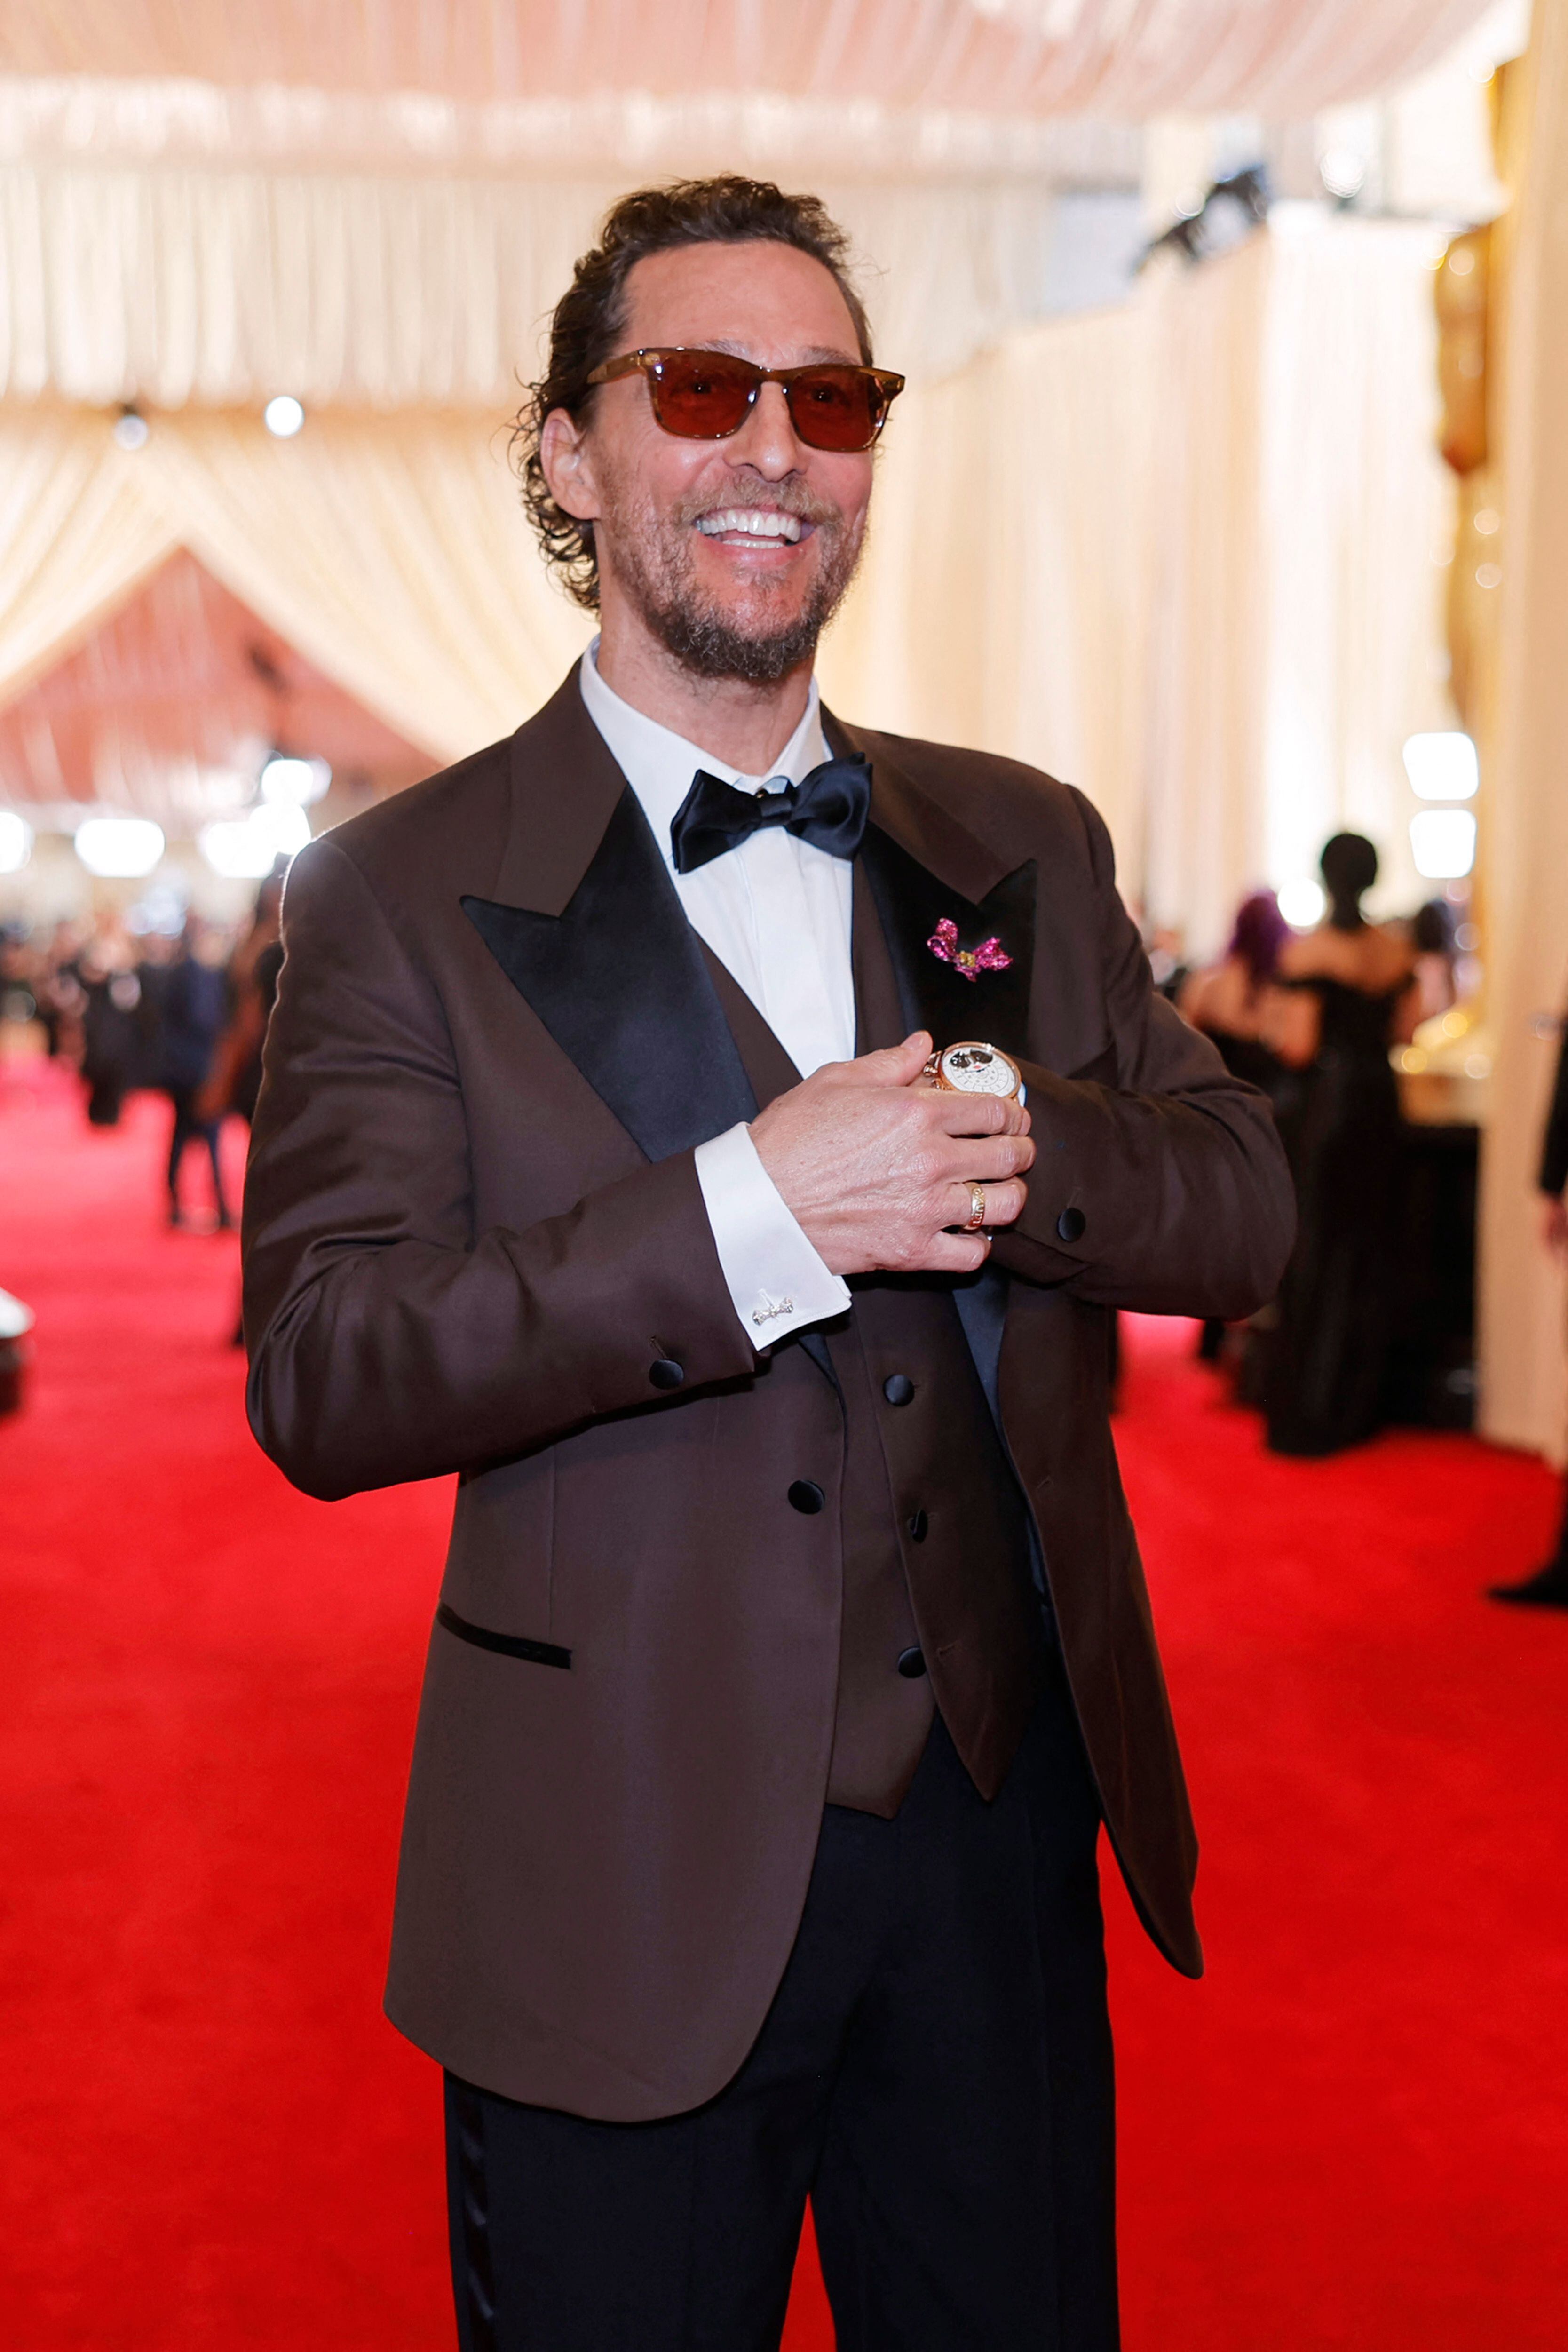 El actor Matthew McConaughey caminó por la alfombra roja con un traje negro y gafas de sol. El artista sonrió a lo largo de su camino hacia el Dolby Theatre.